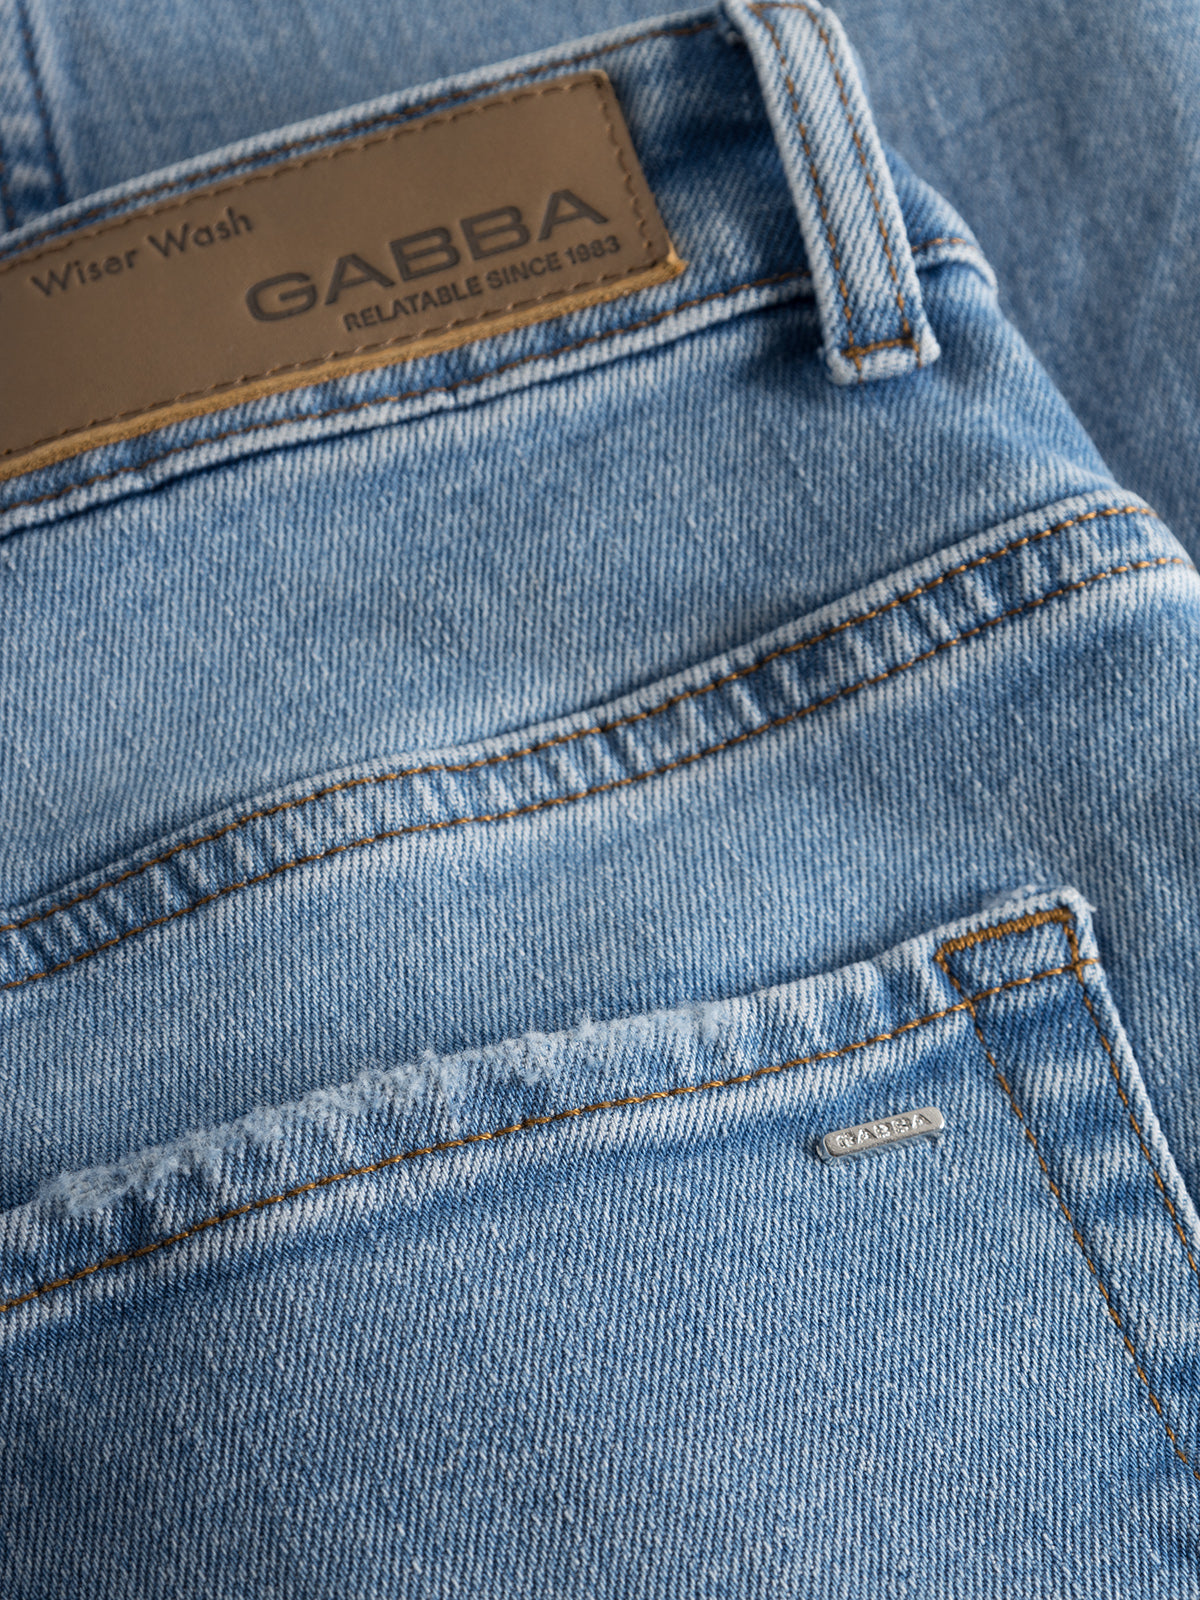 Marc jeans F1012 lt blue denim - Gabba